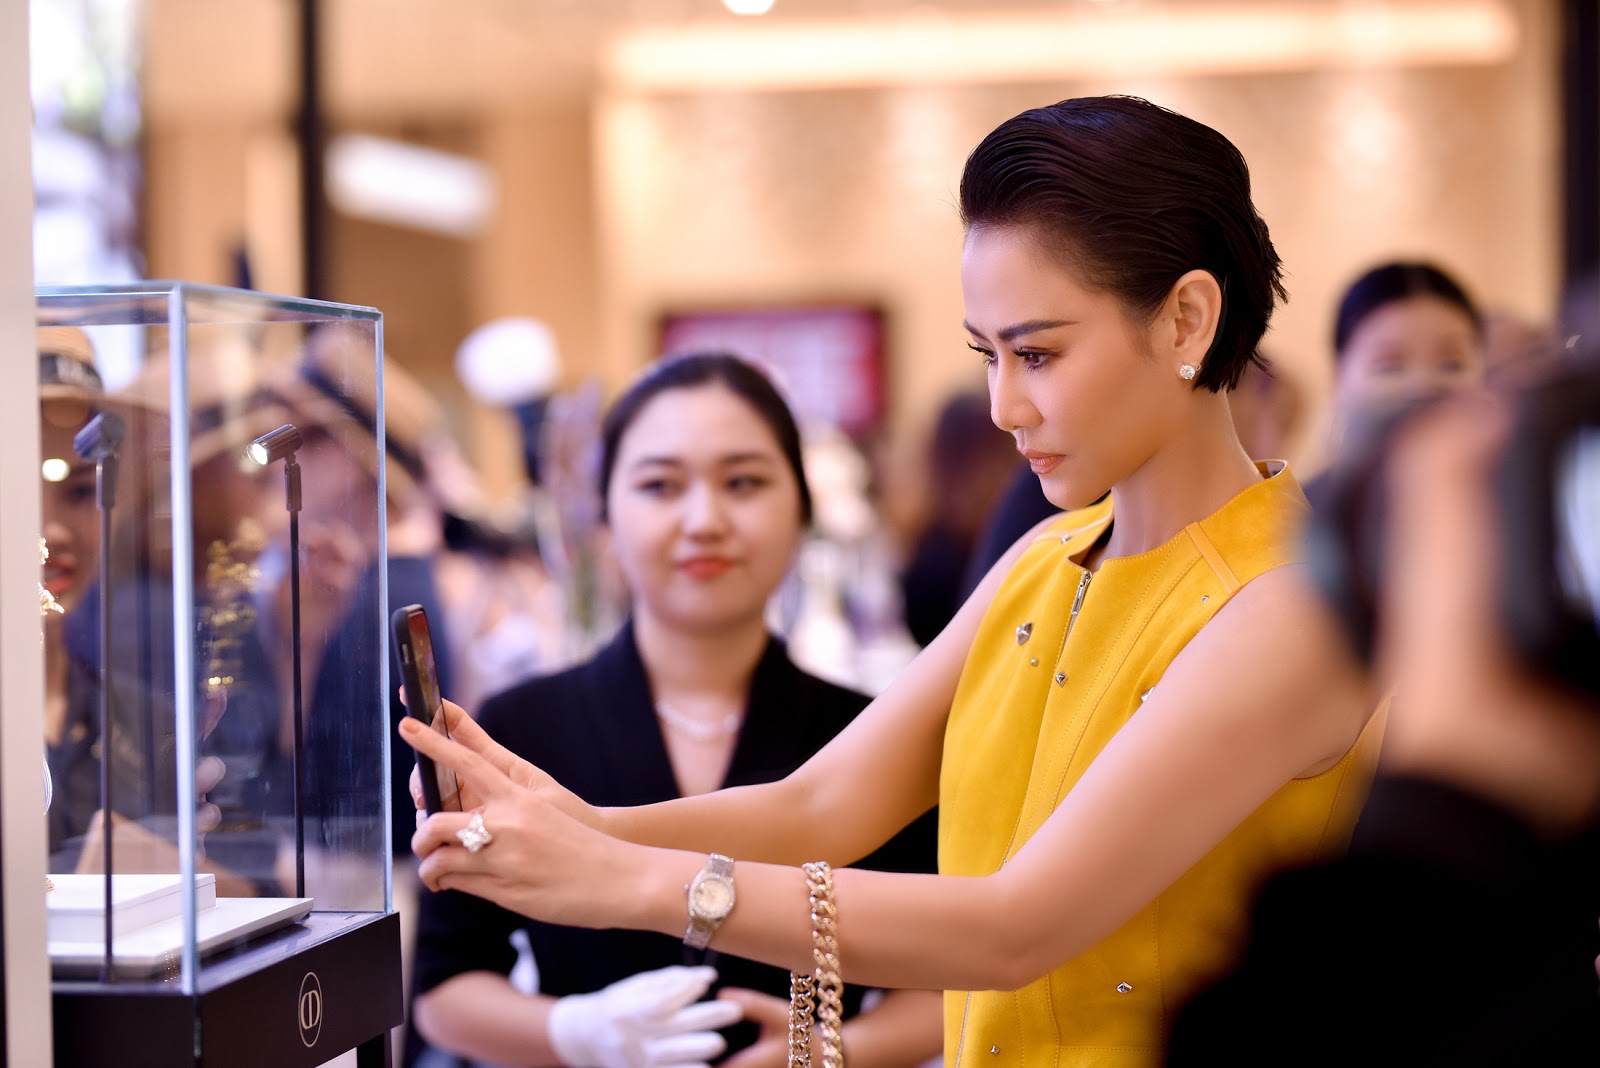 Dior khai trương cửa hàng mới ở trung tâm Sài Gòn tại Union Square